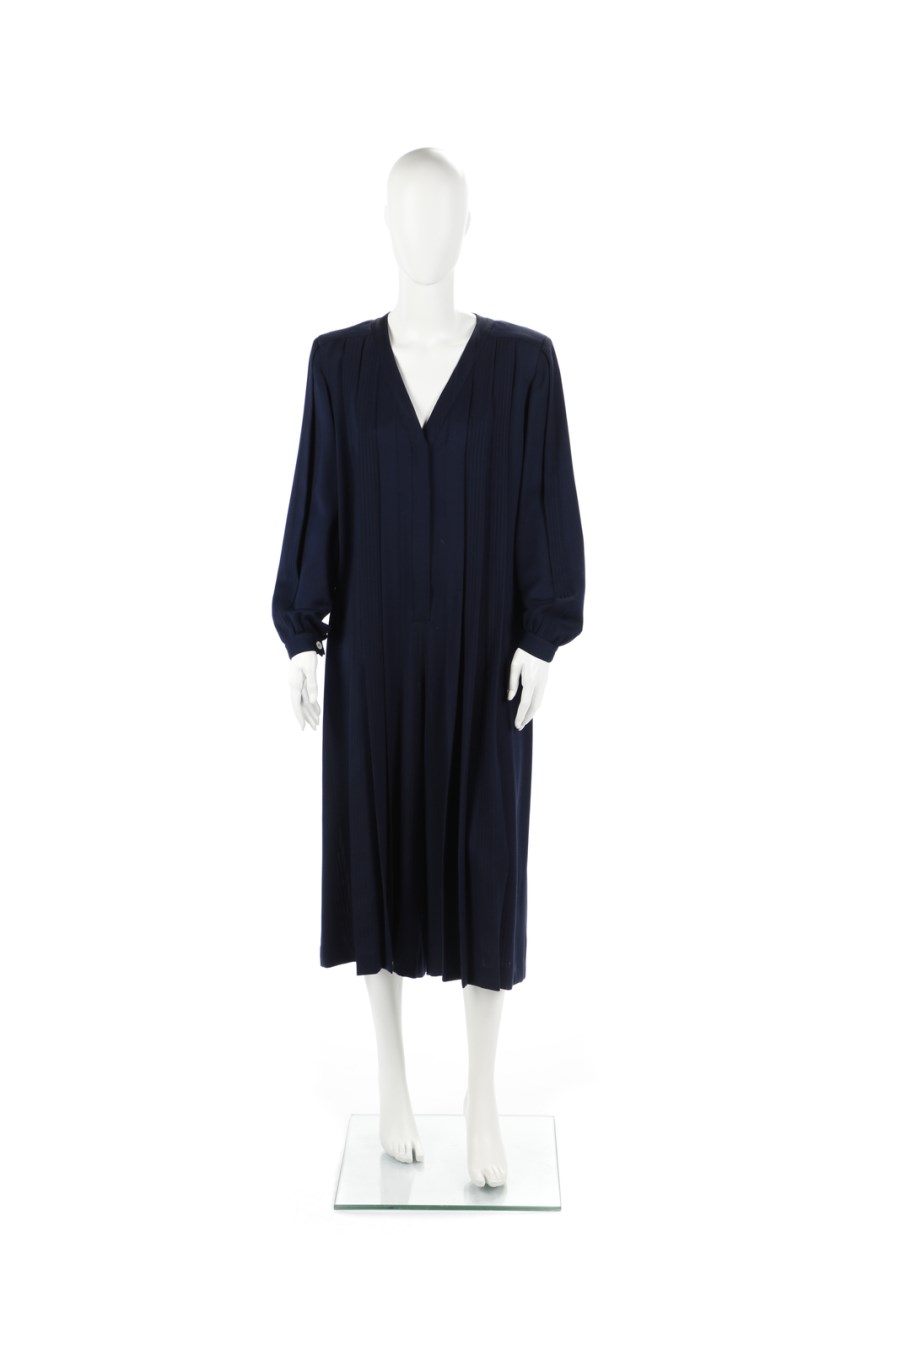 Vestito blu midi plissettato con maniche lunghe e scollo a v  in lana vergine. Anni 80. (Gianfranco Ferre')